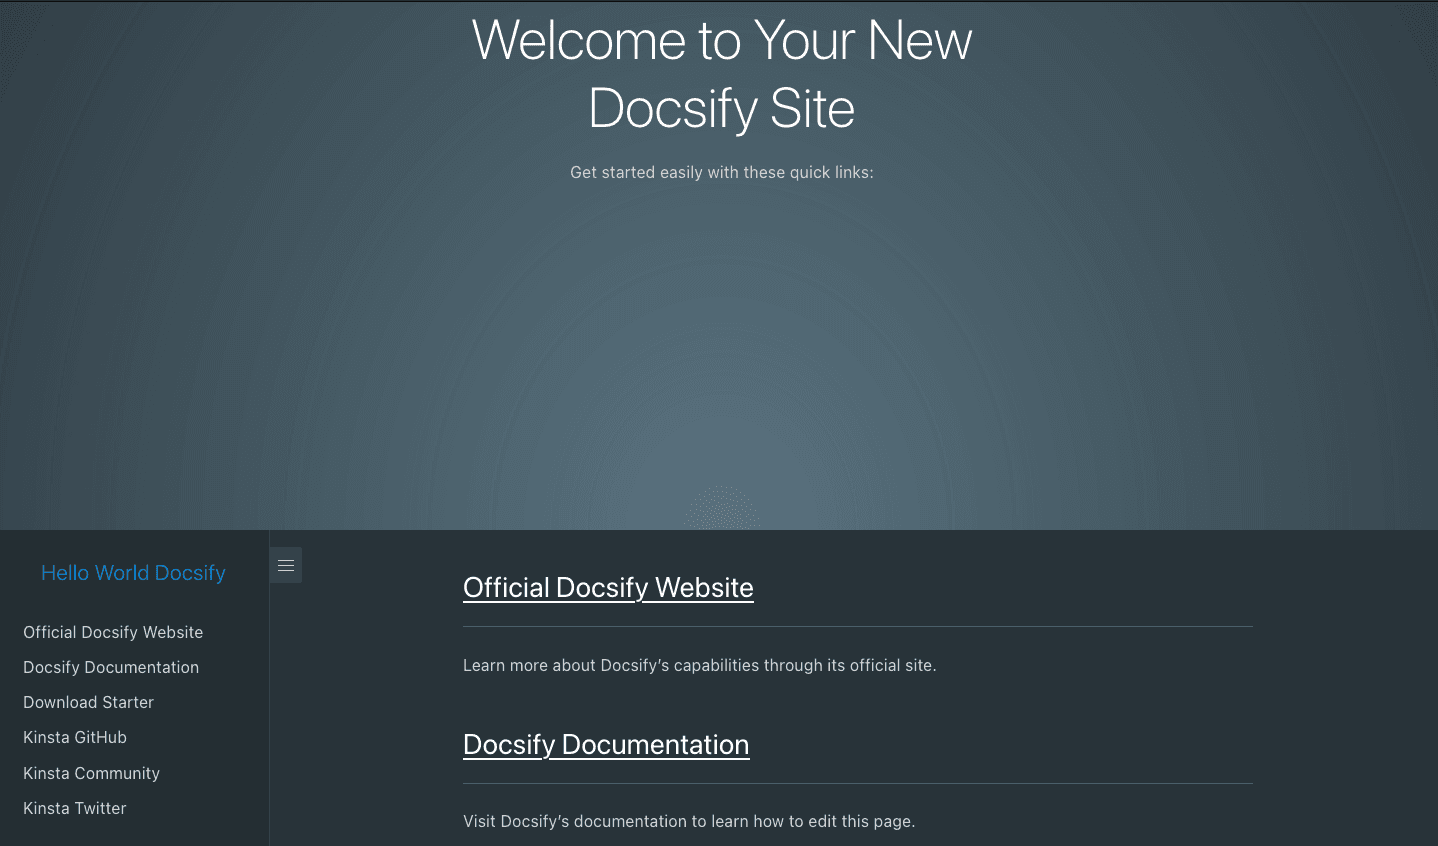 Docsify-Willkommensseite nach erfolgreicher Bereitstellung von Docsify